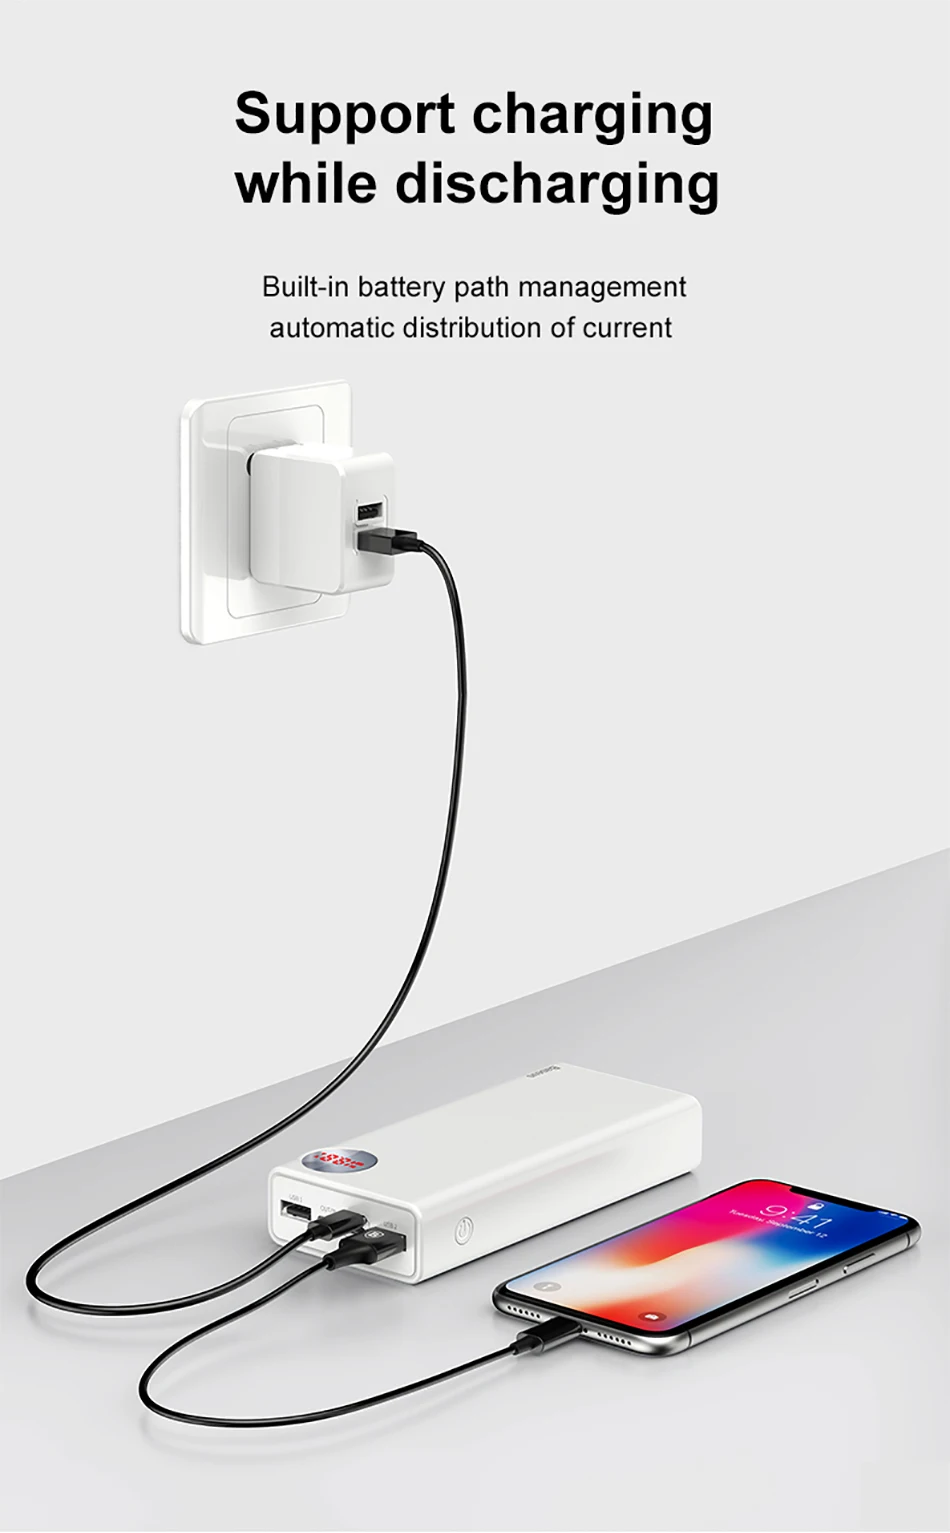 Baseus power Bank 20000 мАч Быстрая зарядка 3,0 PD 3,0 Быстрая Зарядка power bank для iPhone Xiaomi samsung Внешнее зарядное устройство